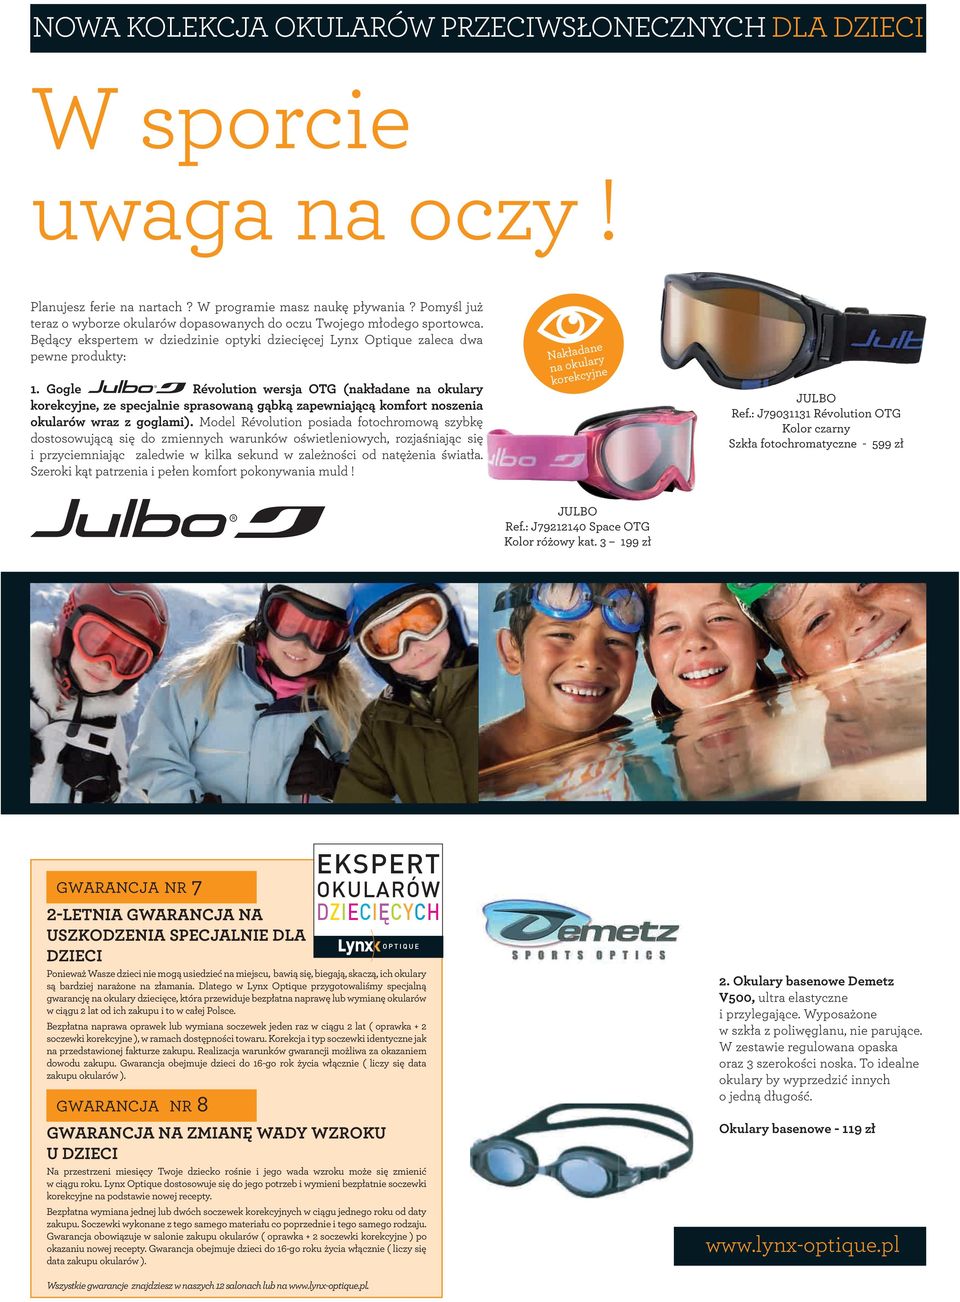 Gogle Révolution wersja OTG (nakładane na okulary korekcyjne, ze specjalnie sprasowaną gąbką zapewniającą komfort noszenia okularów wraz z goglami).